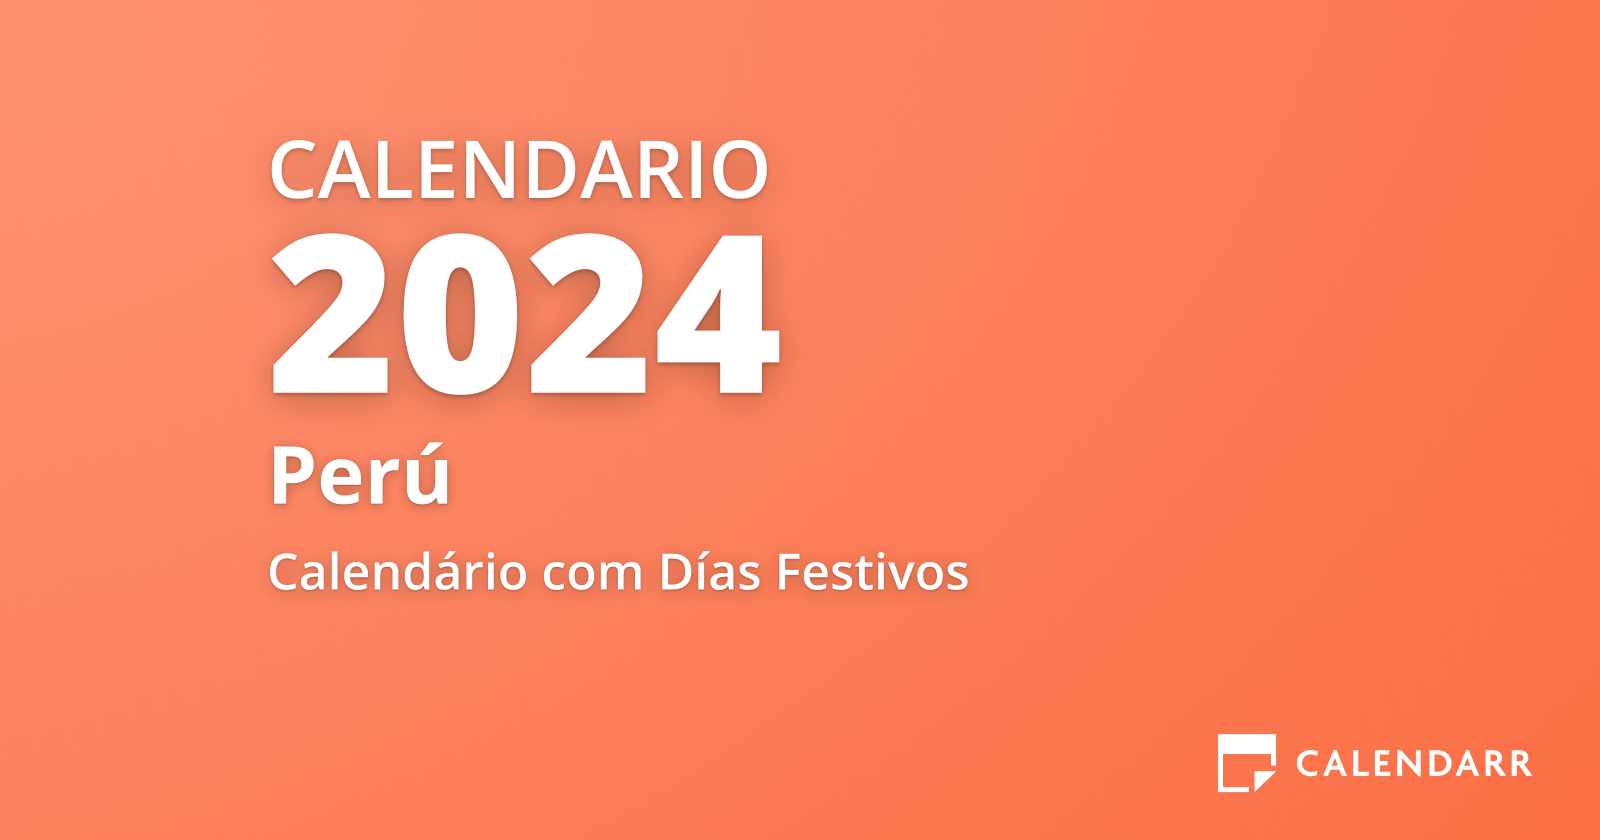 Calendario Febrero 2024 de Perú (Días Festivos y Fechas Importantes